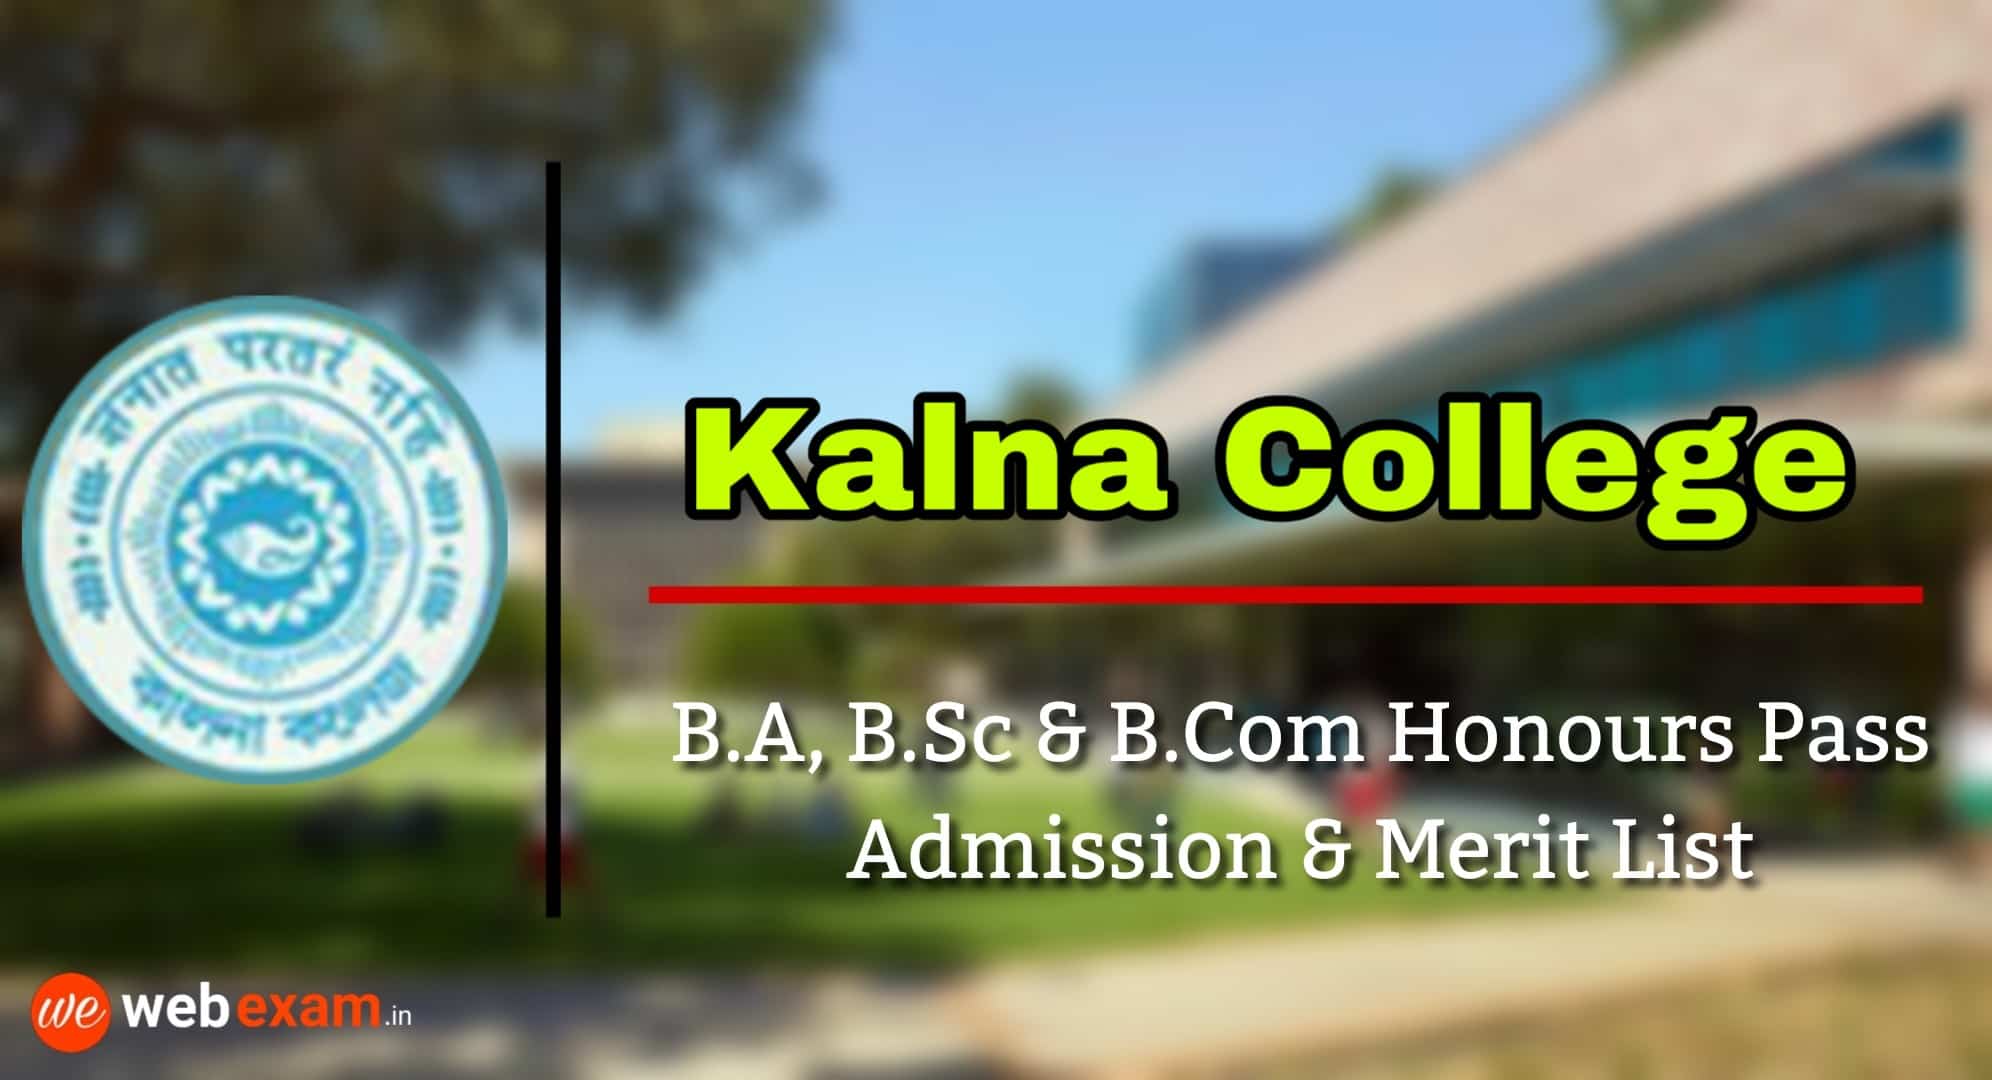 Kalna College Admission & Merit List Download